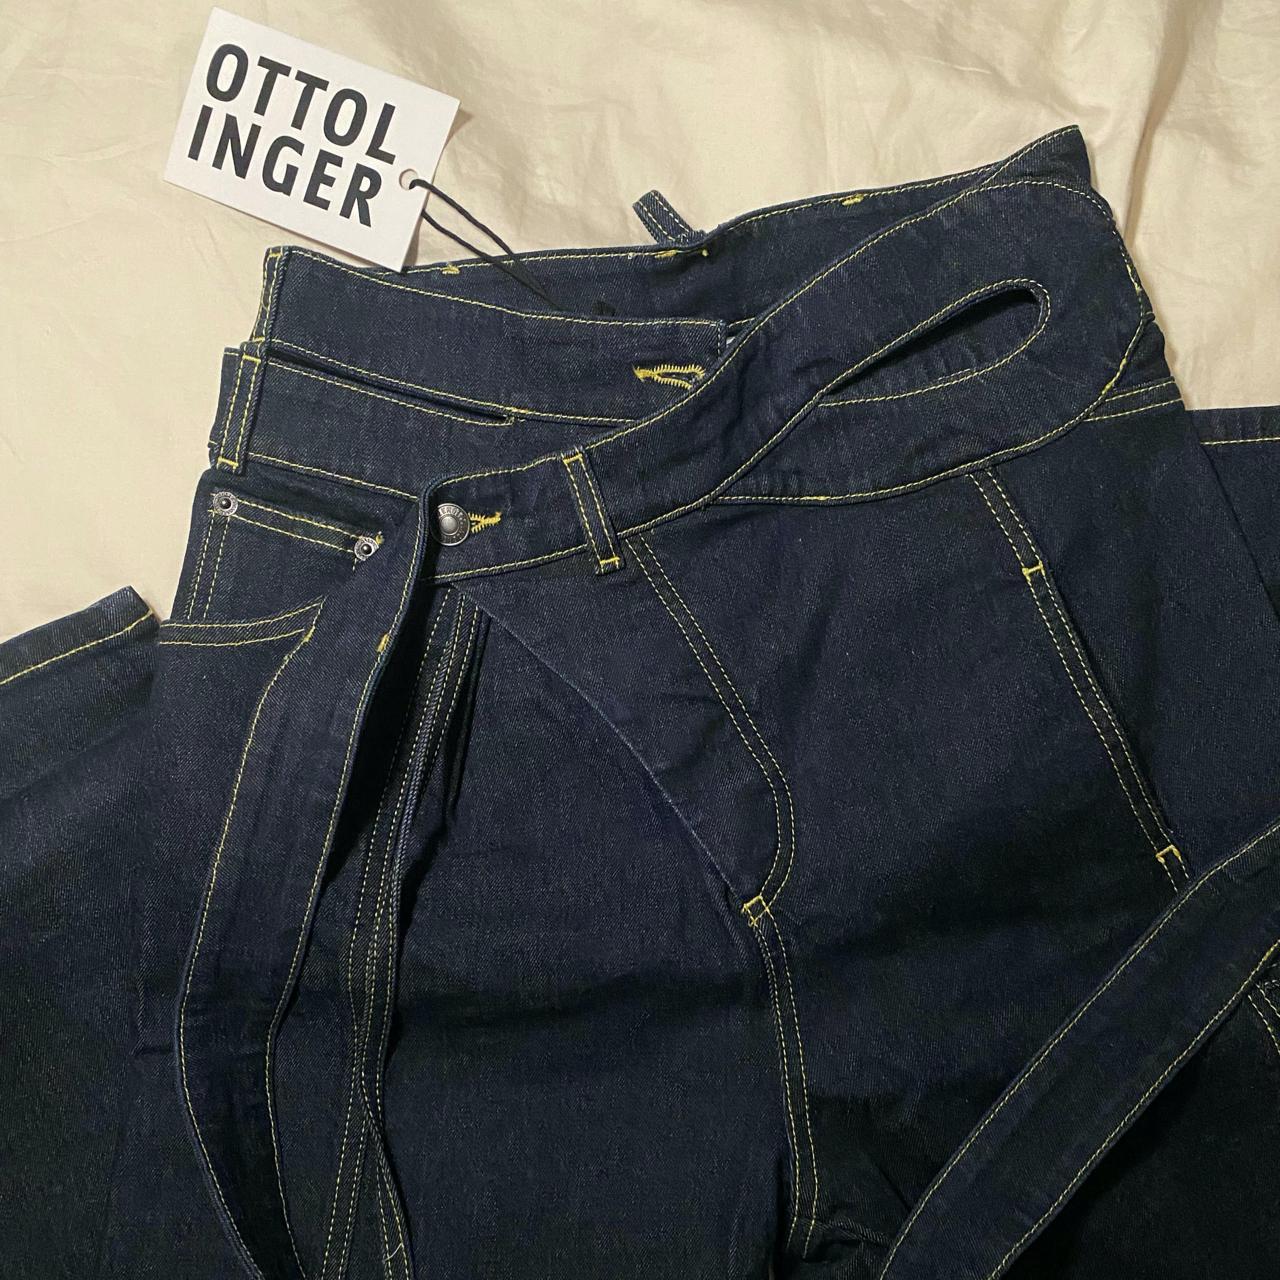 Ottolinger Women's Blue Jeans